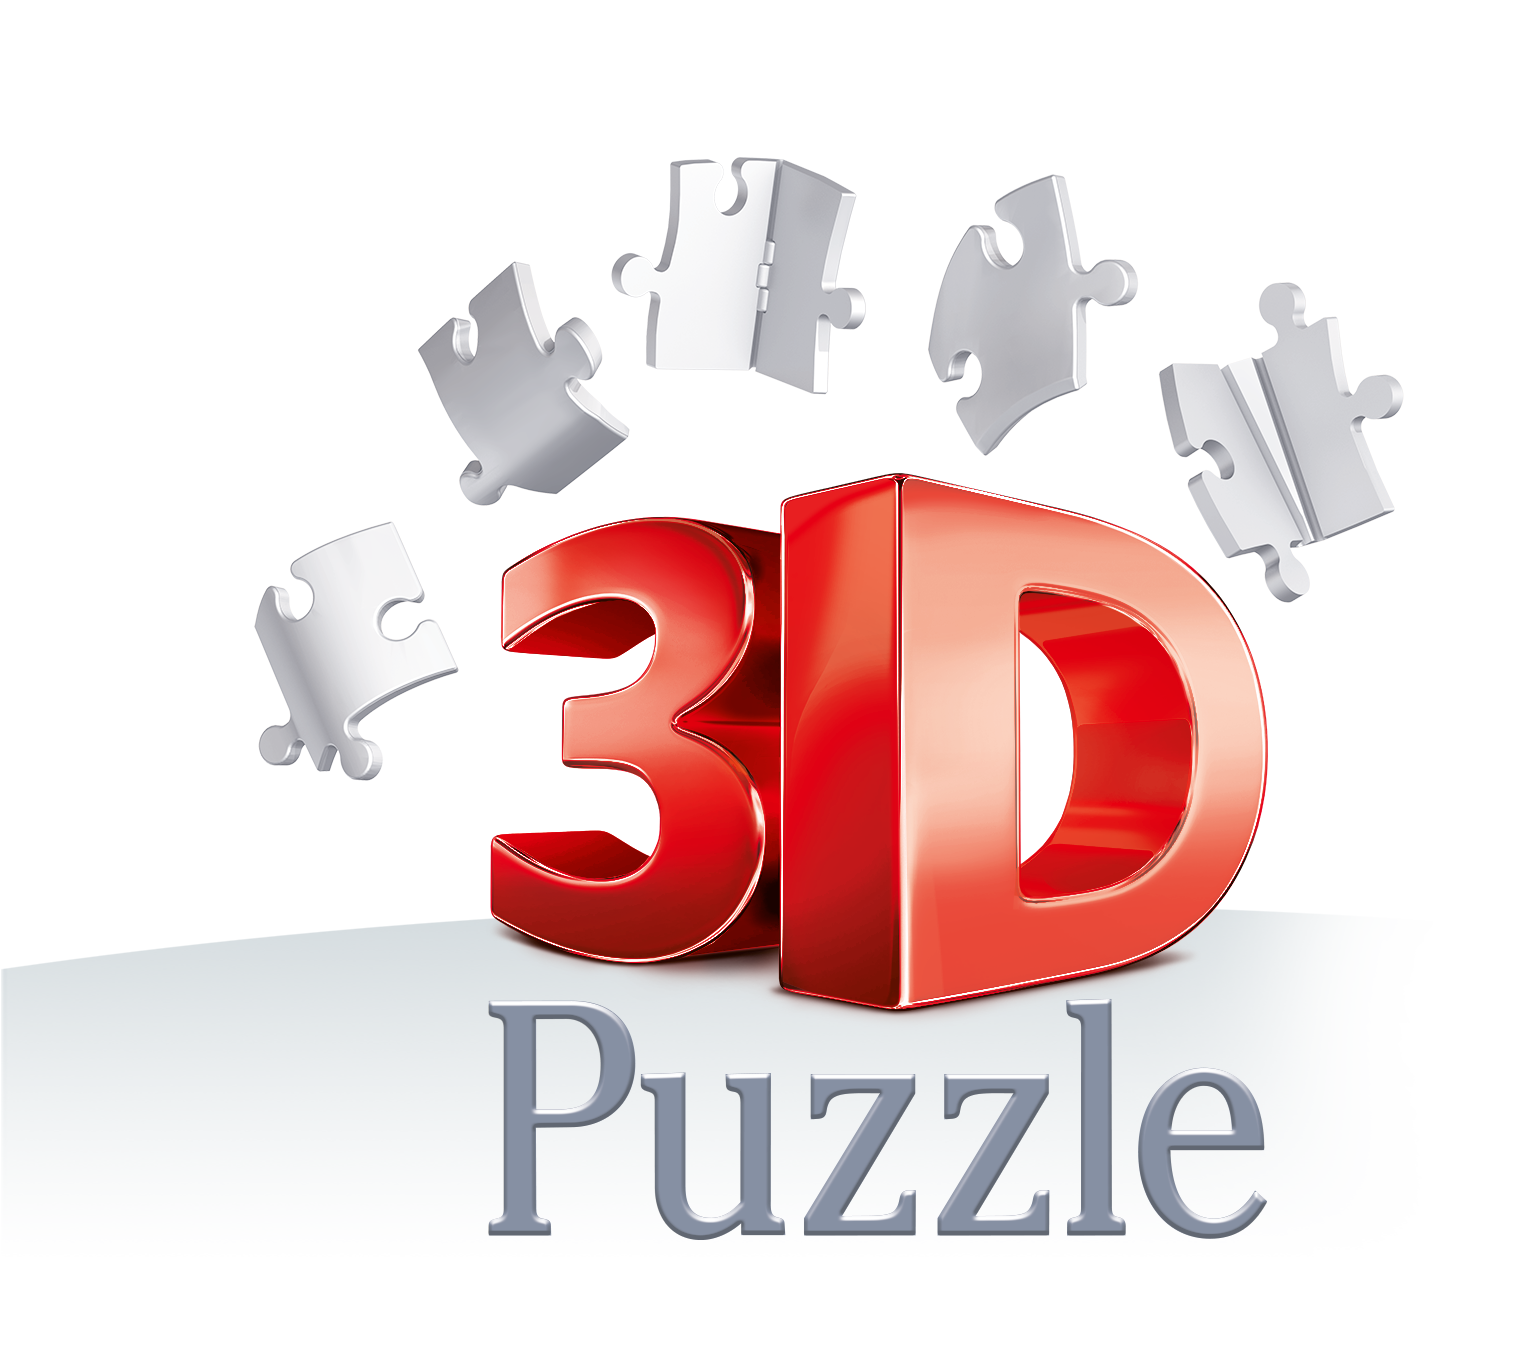 3D-Puzzle